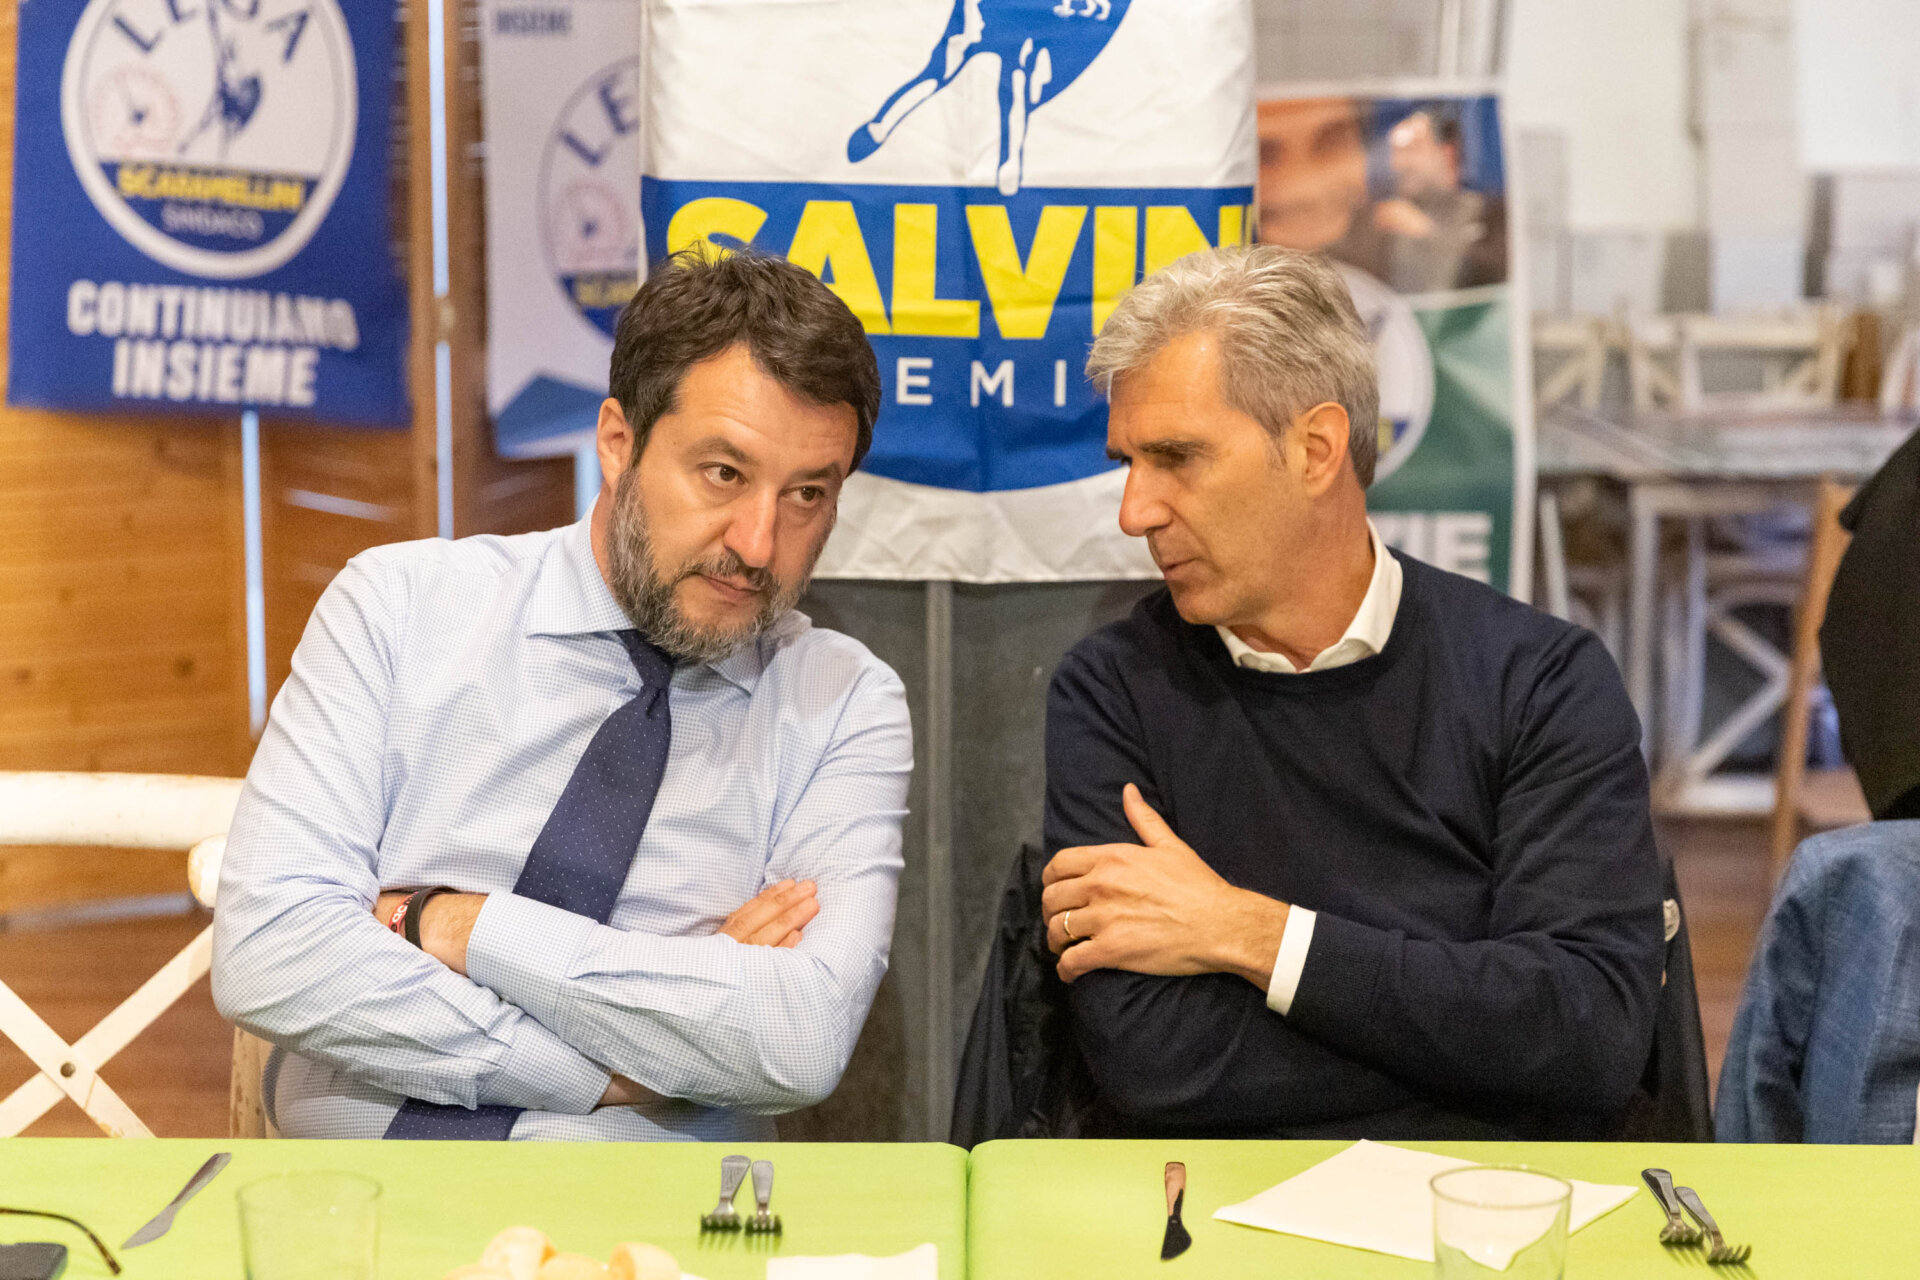 014-Salvini a Sondrio